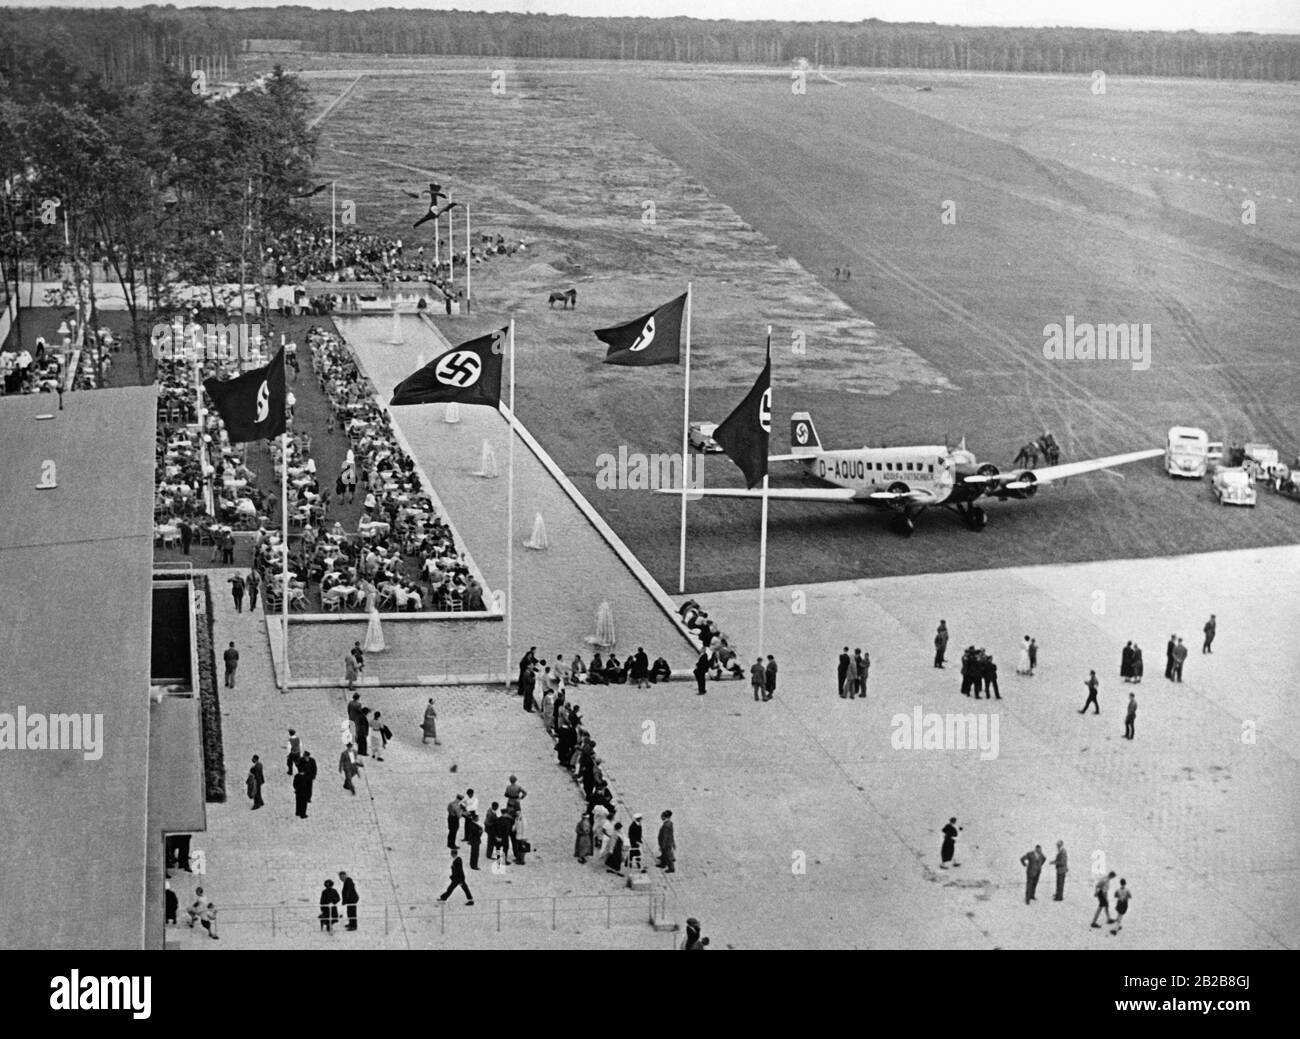 Apertura dell'aeroporto di Francoforte da parte di Erhard Milch e del Governatore Reich di Assia, Jakob Sprenger. Sul piazzale c'è un Junkers Ju52 di Lufthansa. Foto Stock